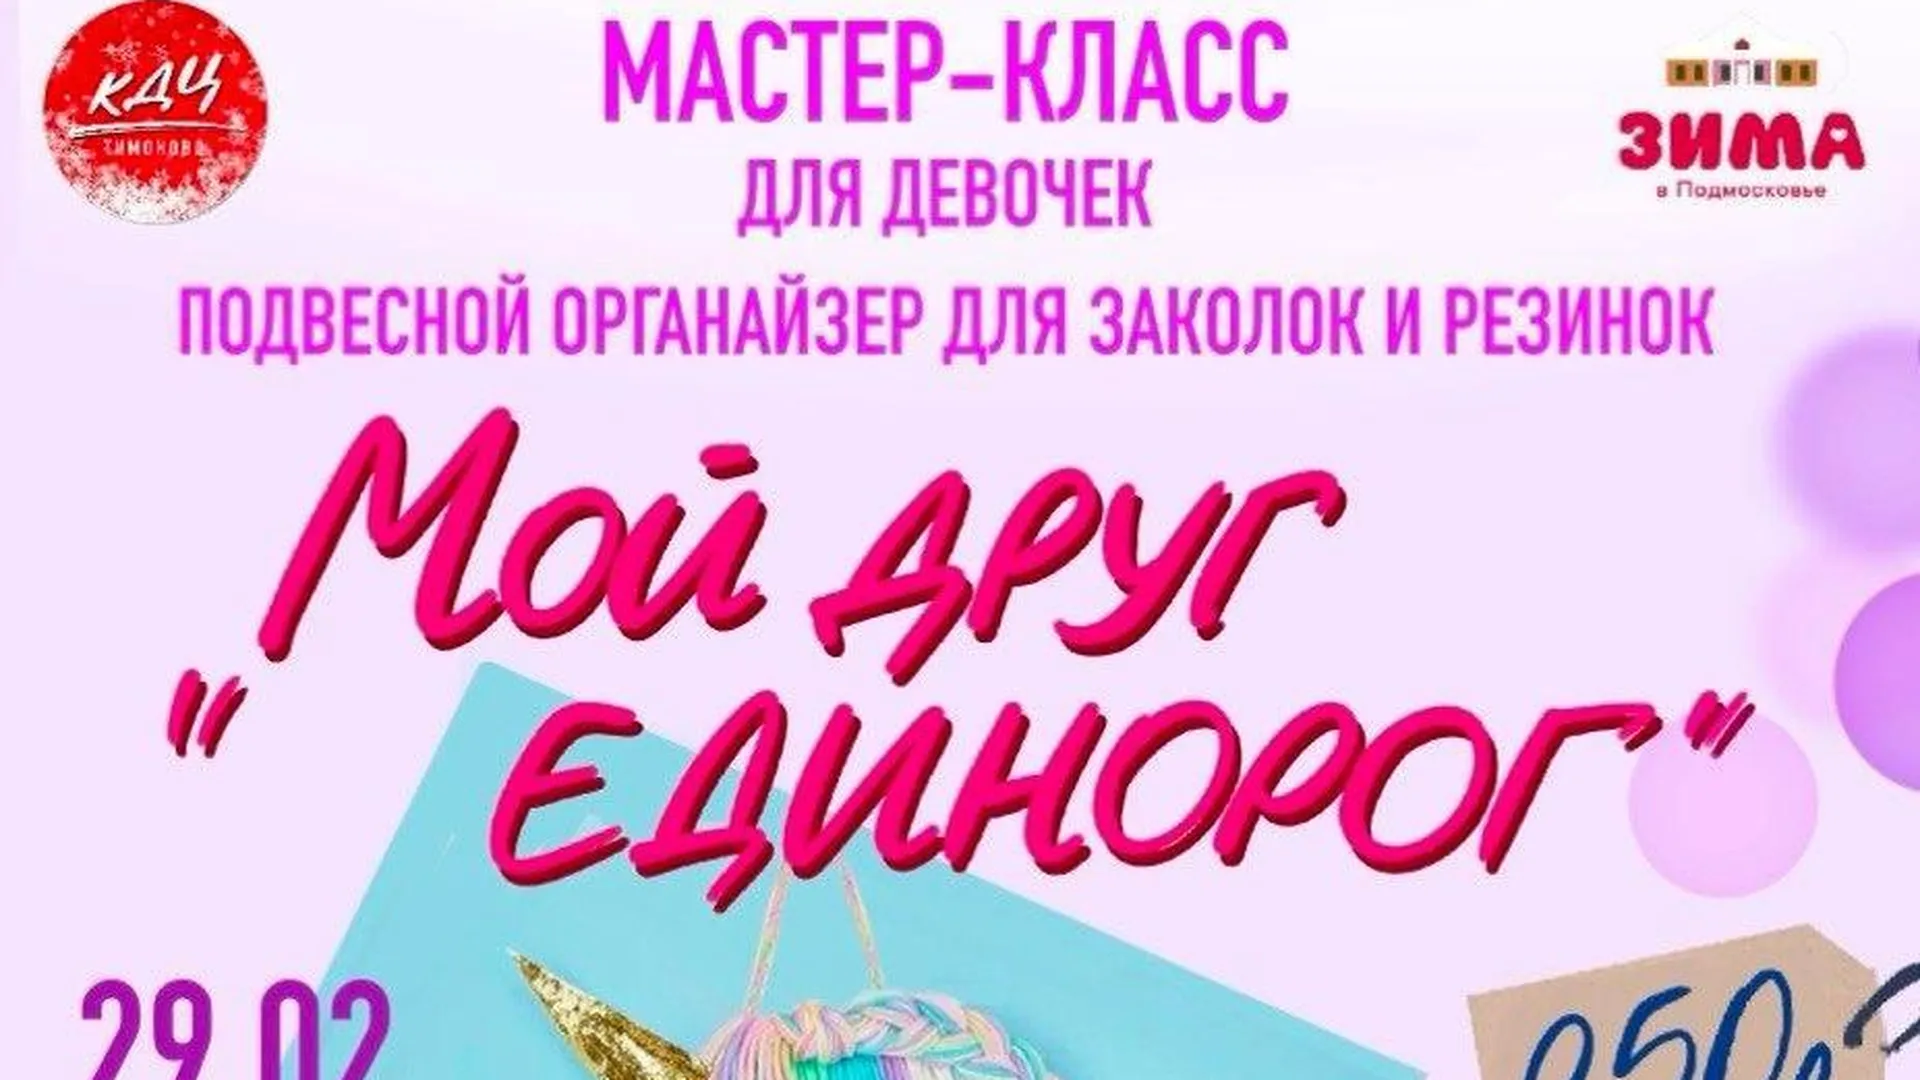 Мастер‑класс для девочек пройдет в Солнечногорске 29 февраля